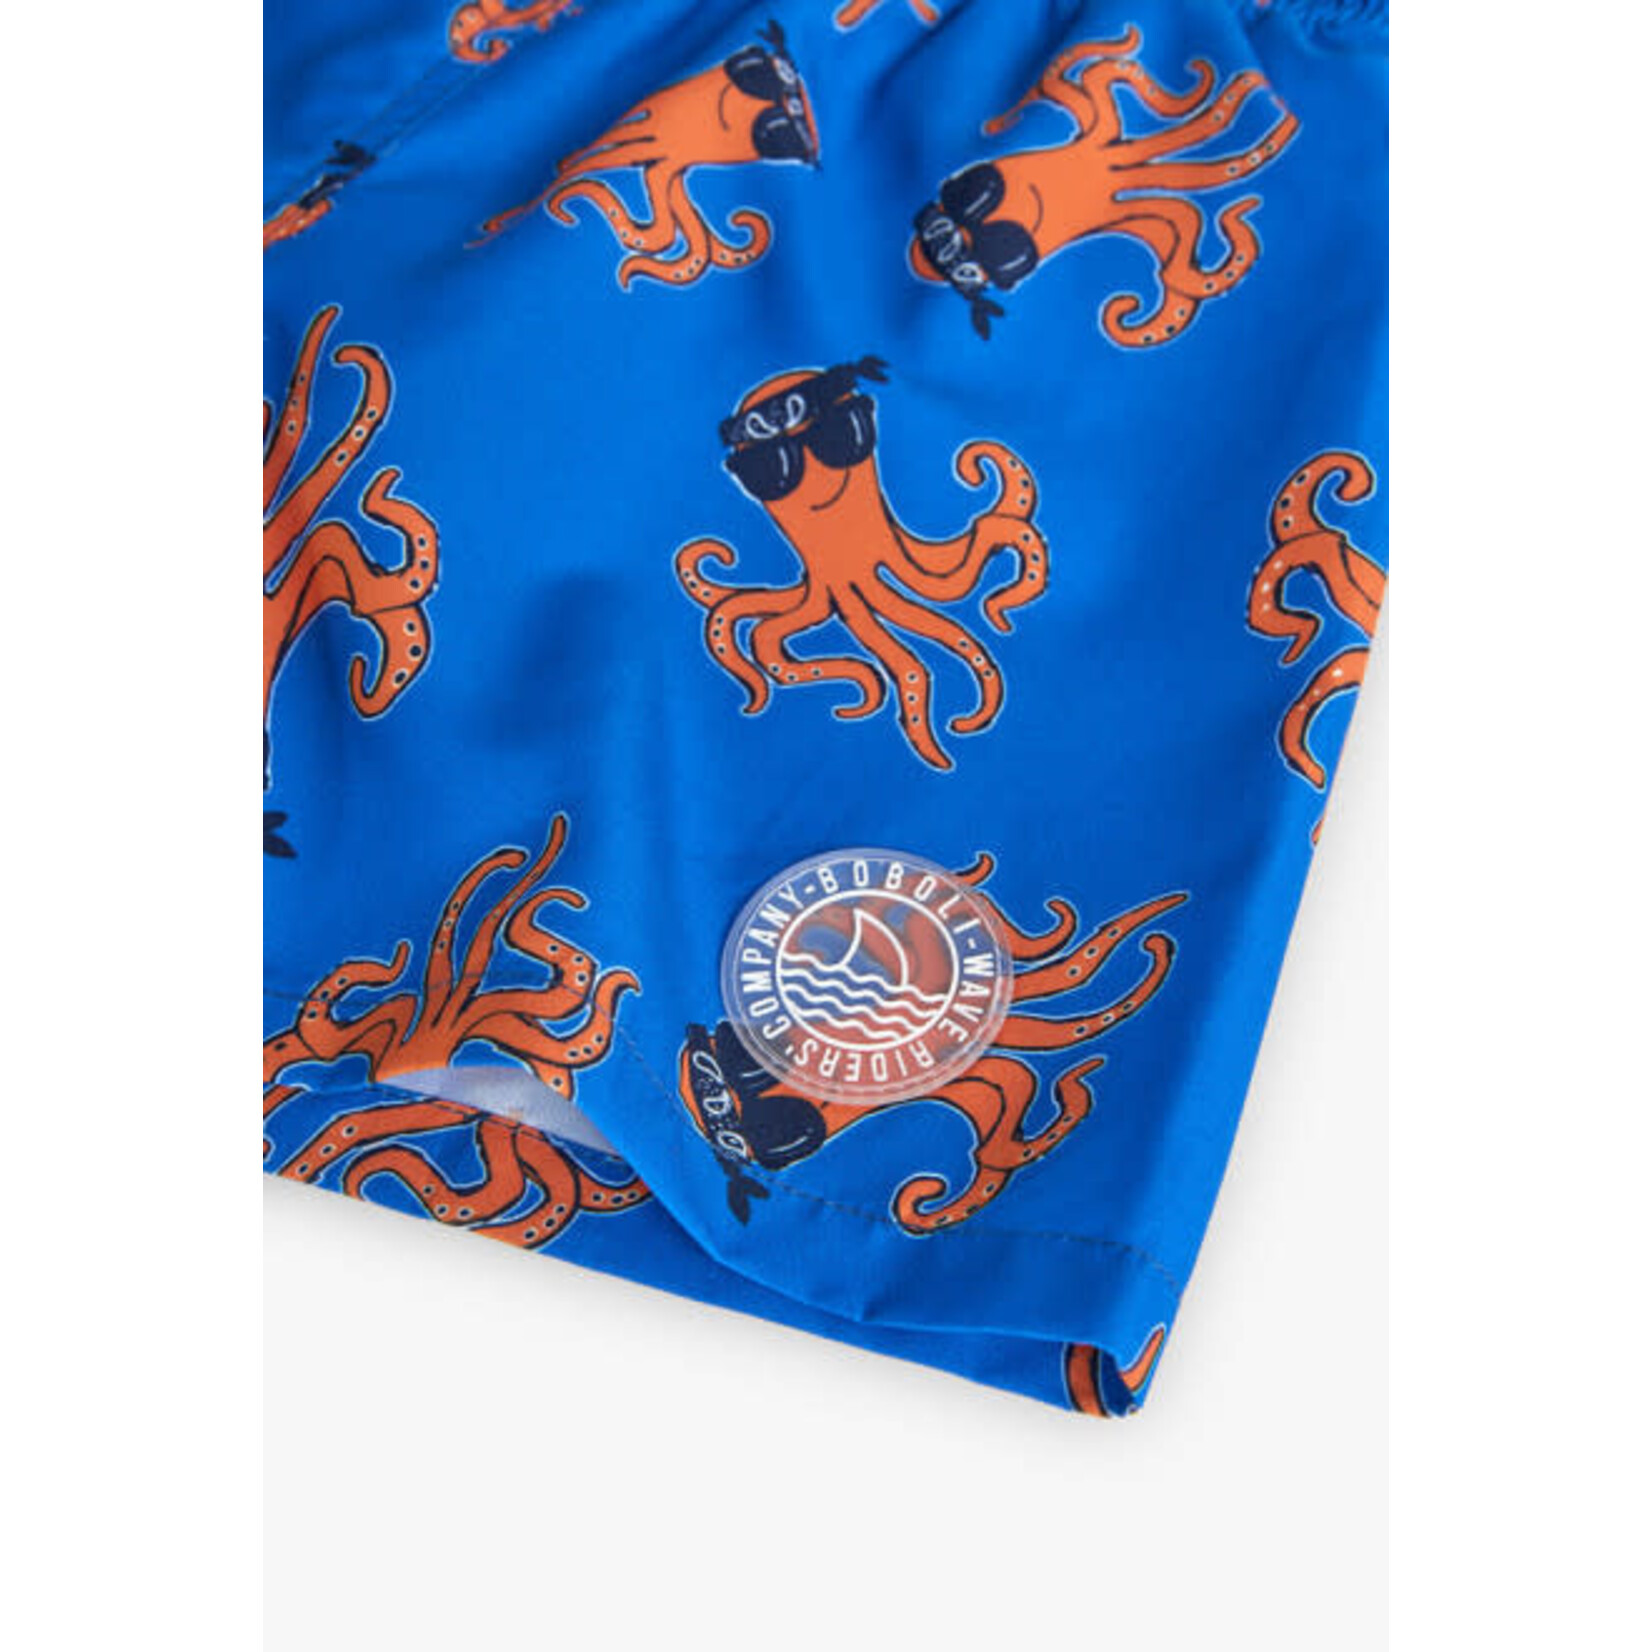 Boboli BOBOLI- Royal blue swim shorts with orange octopus print